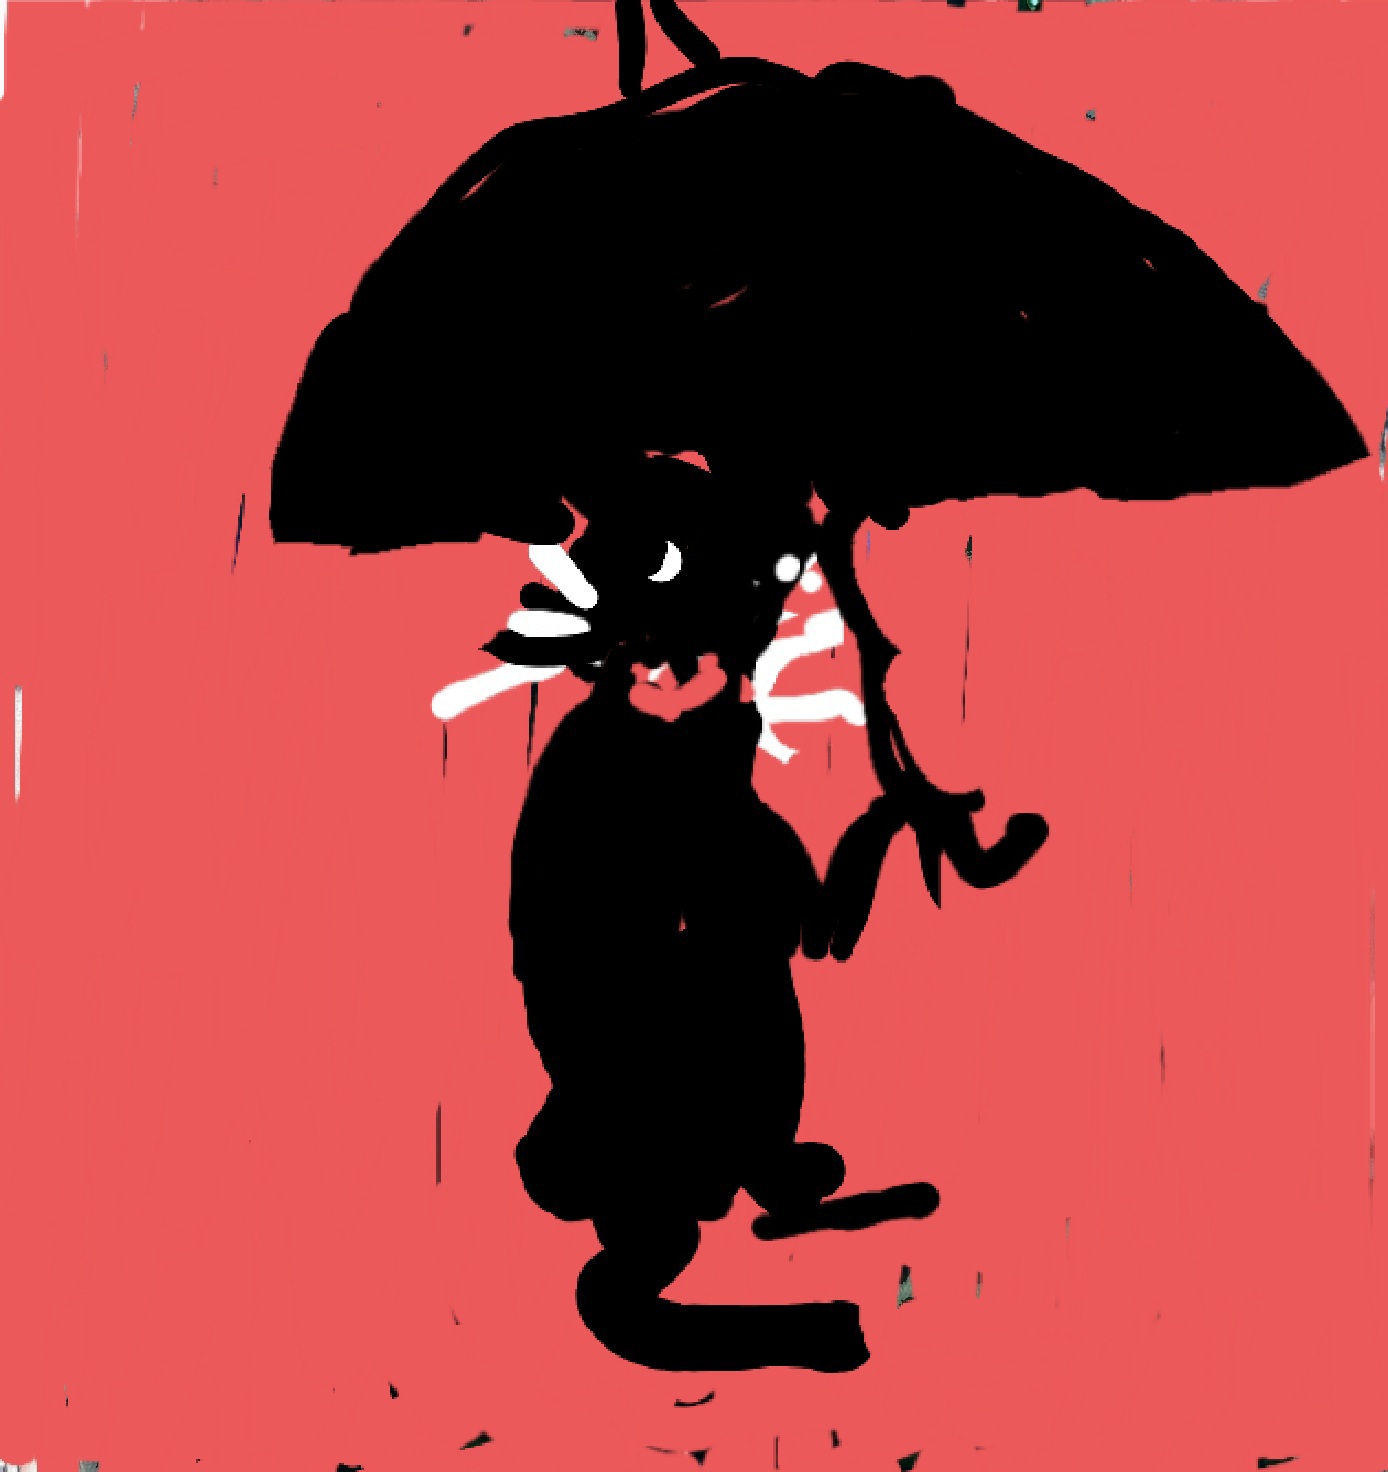 Caroon cat with umbrella